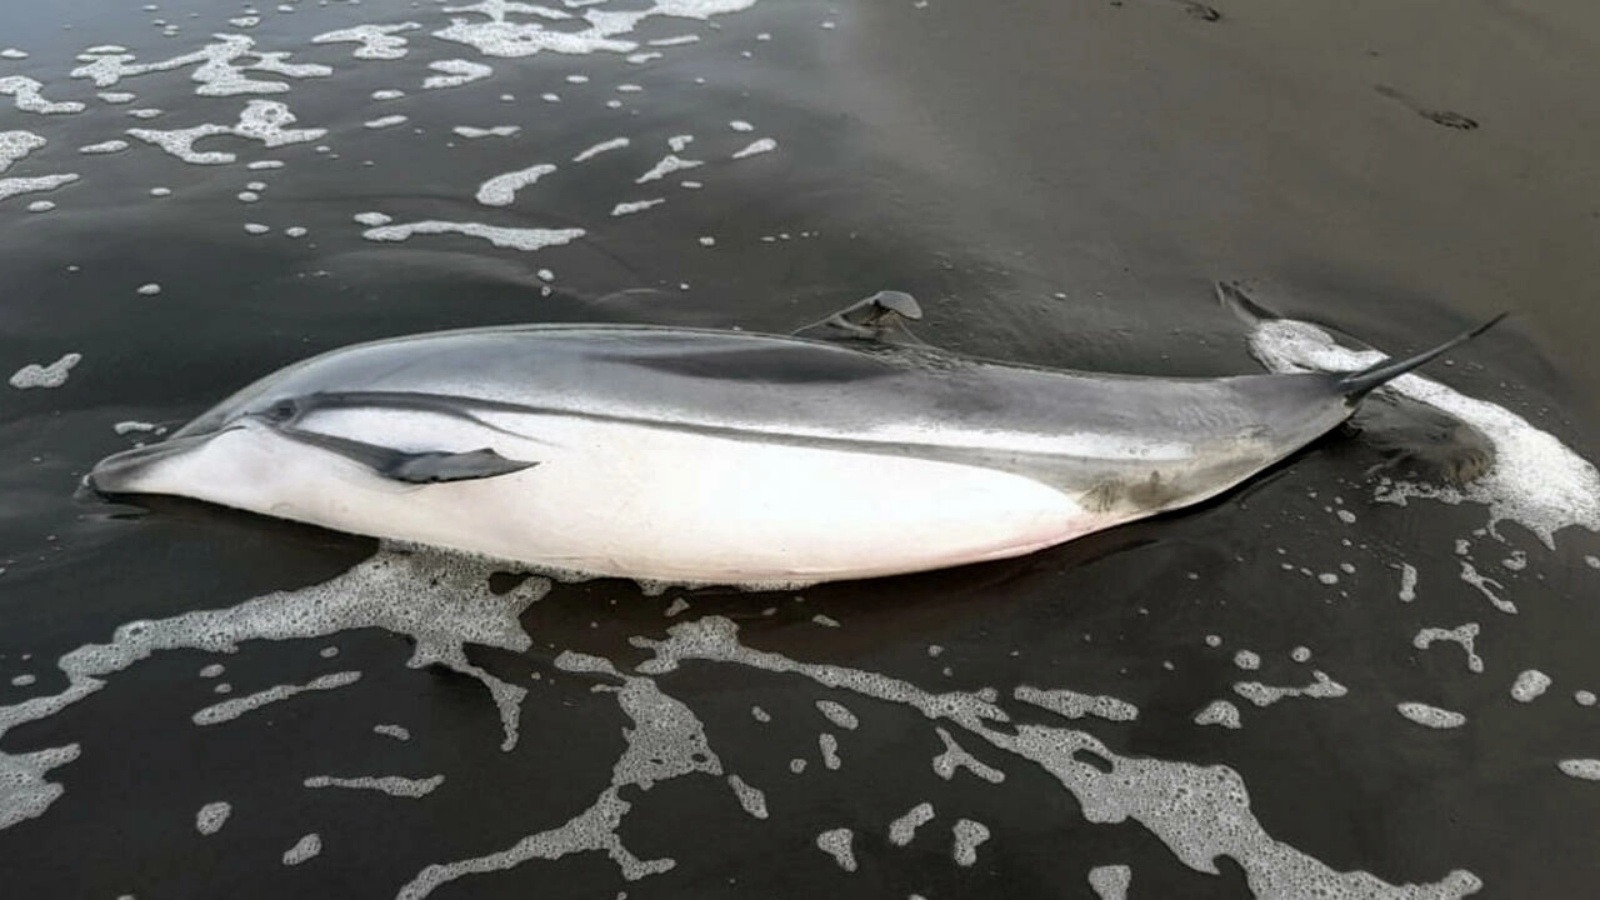 تُظهر صورة نشرها المجلس الوطني للمناطق المحمية في غواتيمالا في 23 يونيو ، دلفينًا ميتًا تم العثور عليه مؤخرًا على ساحل المحيط الهادئ في البلاد